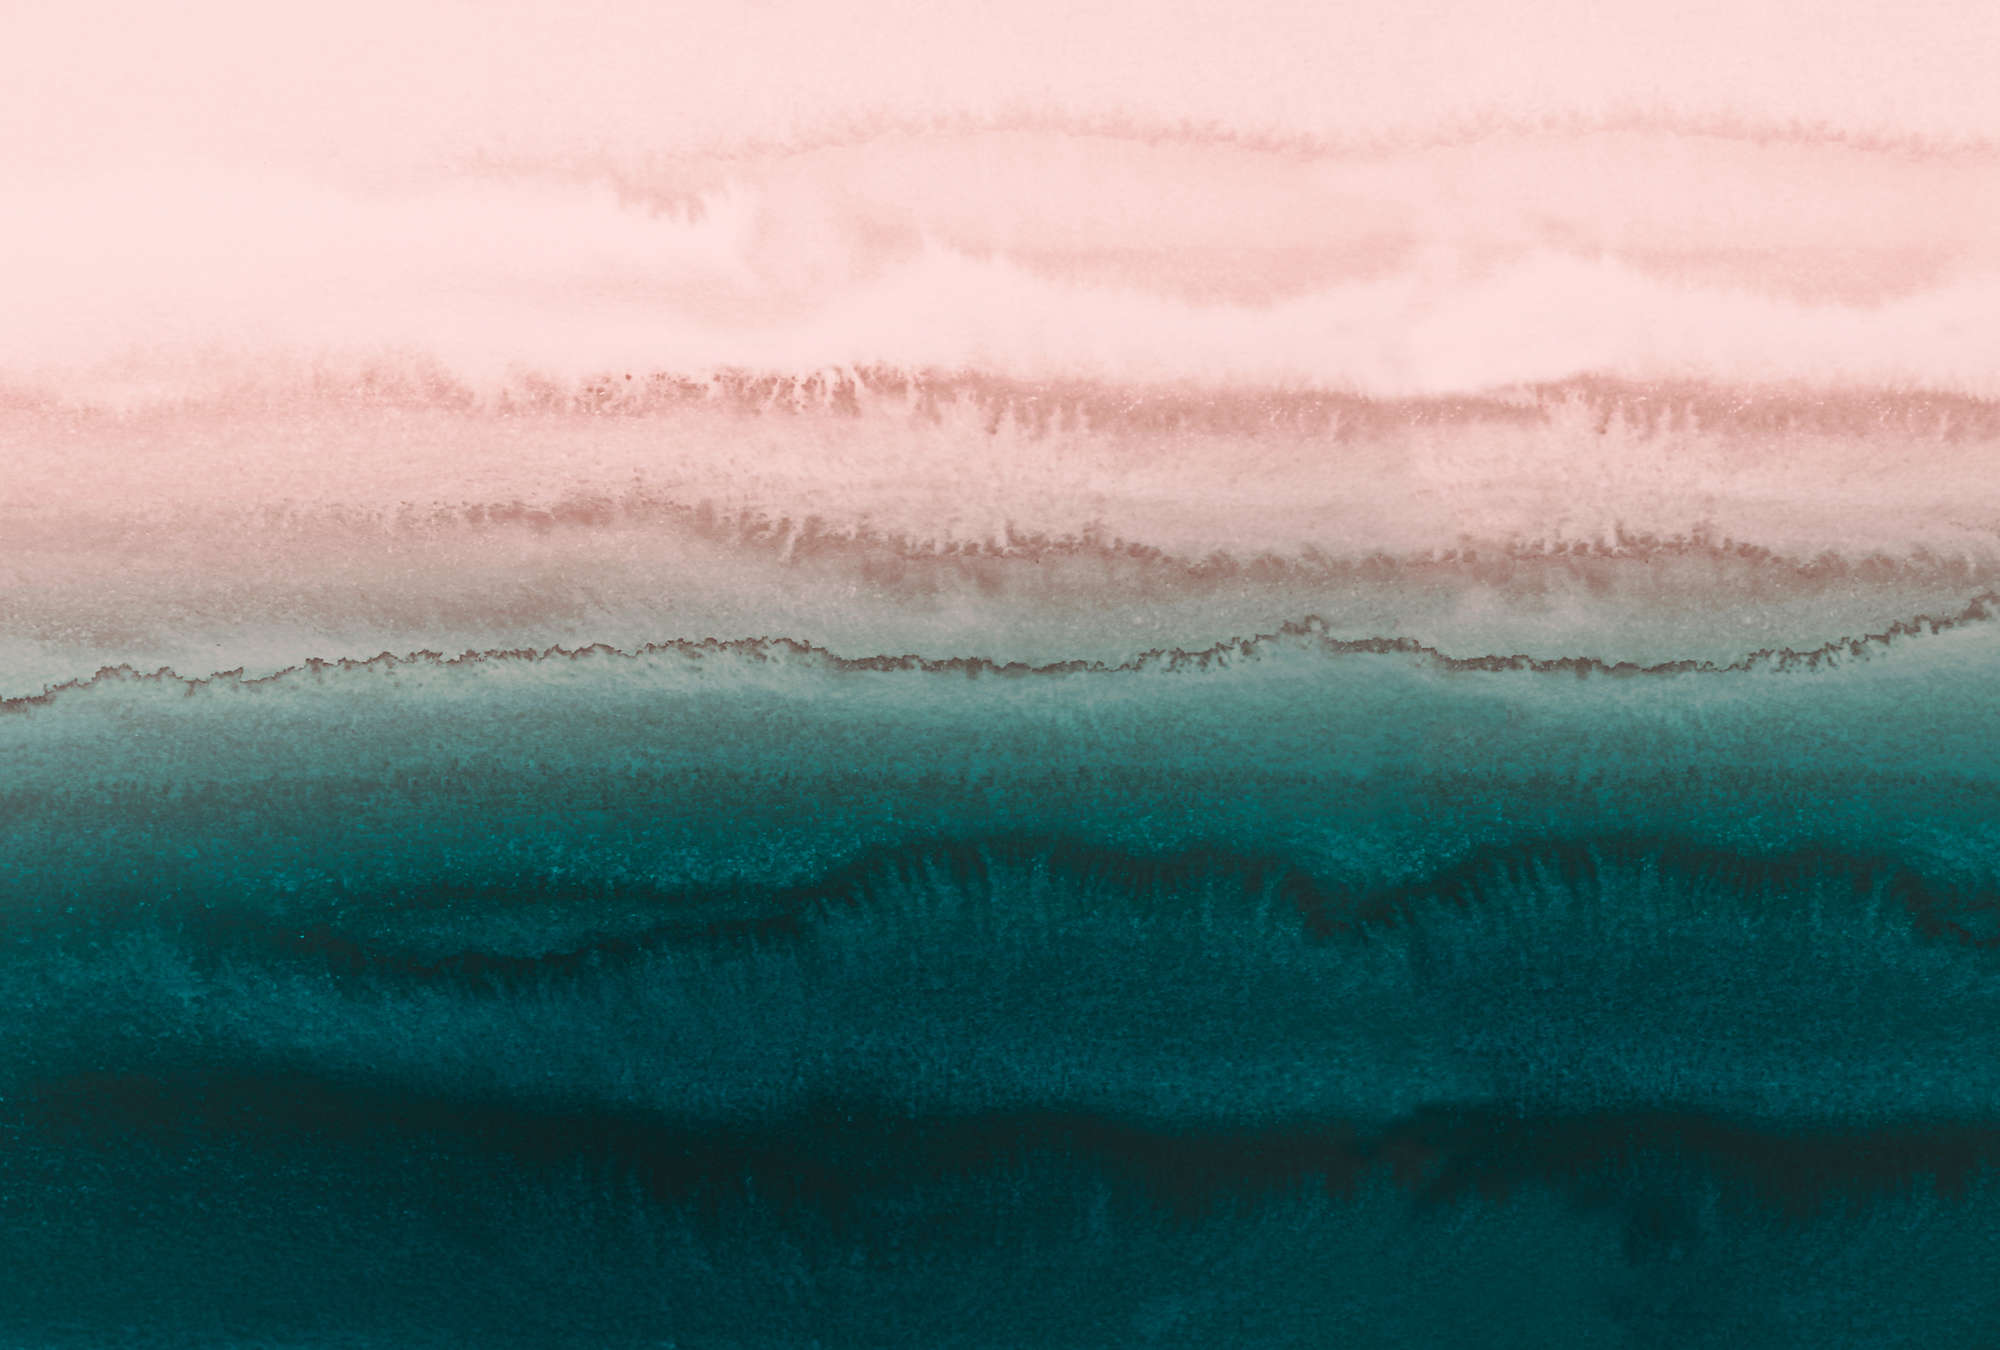             Papier peint marée avec aquarelle d'eau abstraite
        